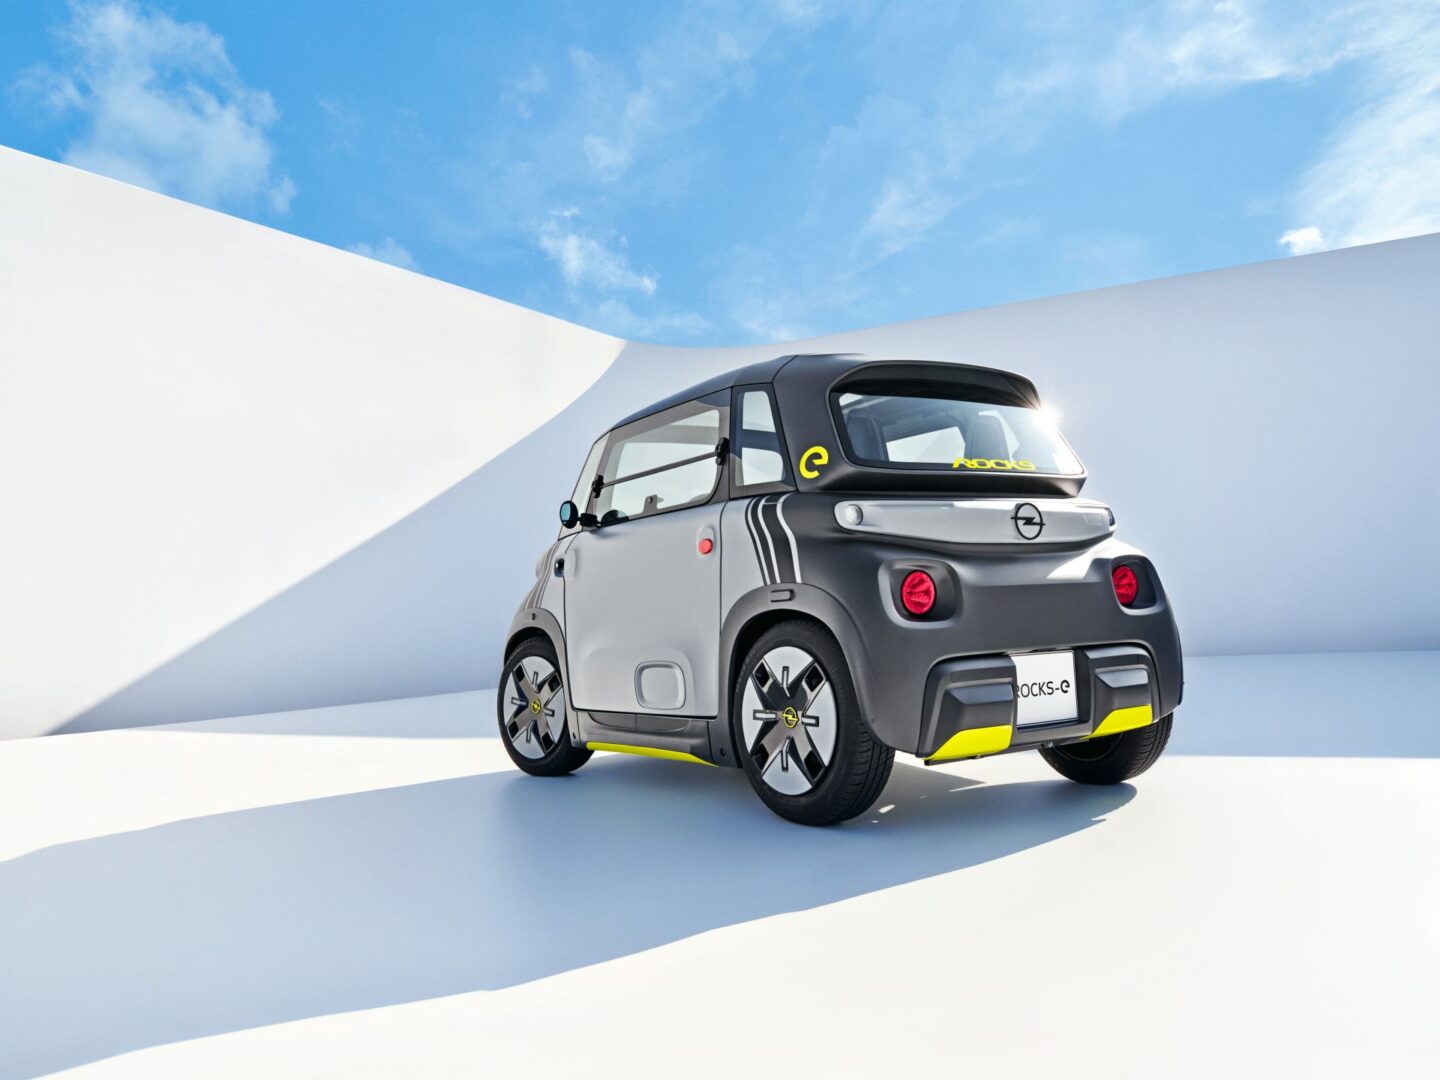 el Opel Rocks-e tiene una batería de 5,5 kWh, se puede recargarse hasta en 4 horas en un tomacorriente común de 110 voltios. V12MAGAZINE